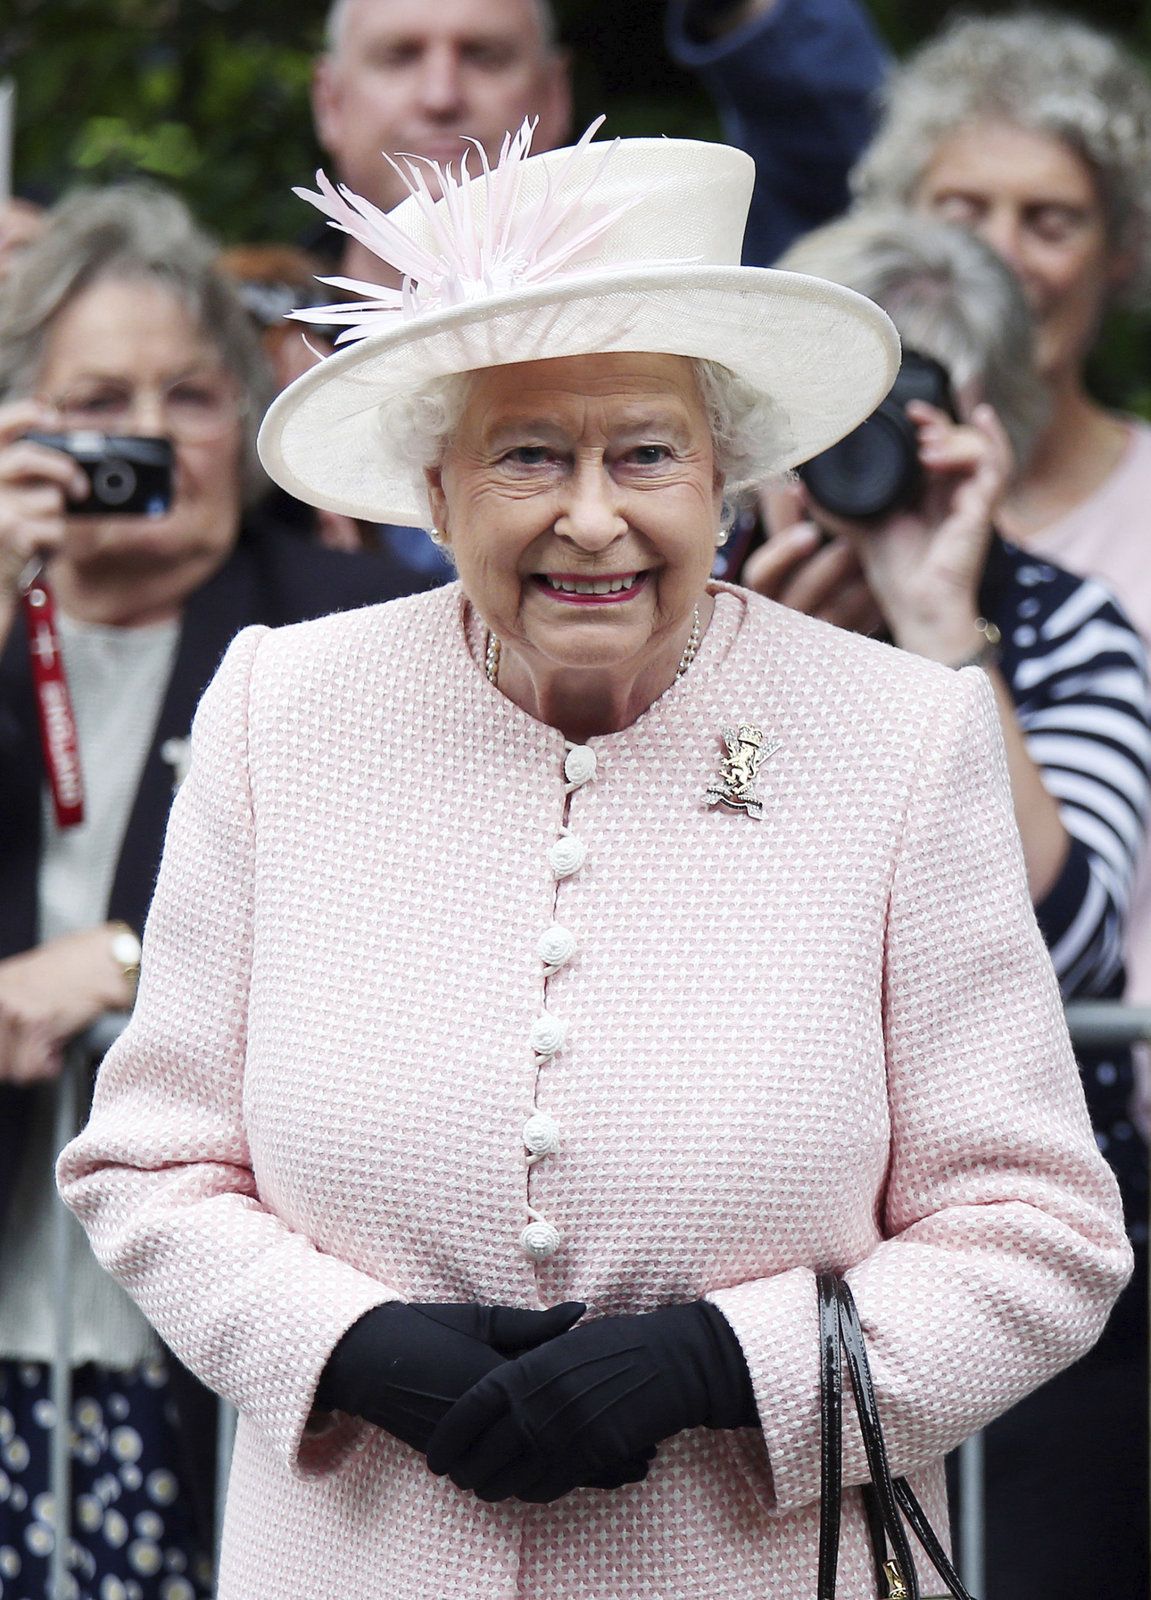 Alžběta II. je nejdéle vládnoucí panovnicí Spojeného království.